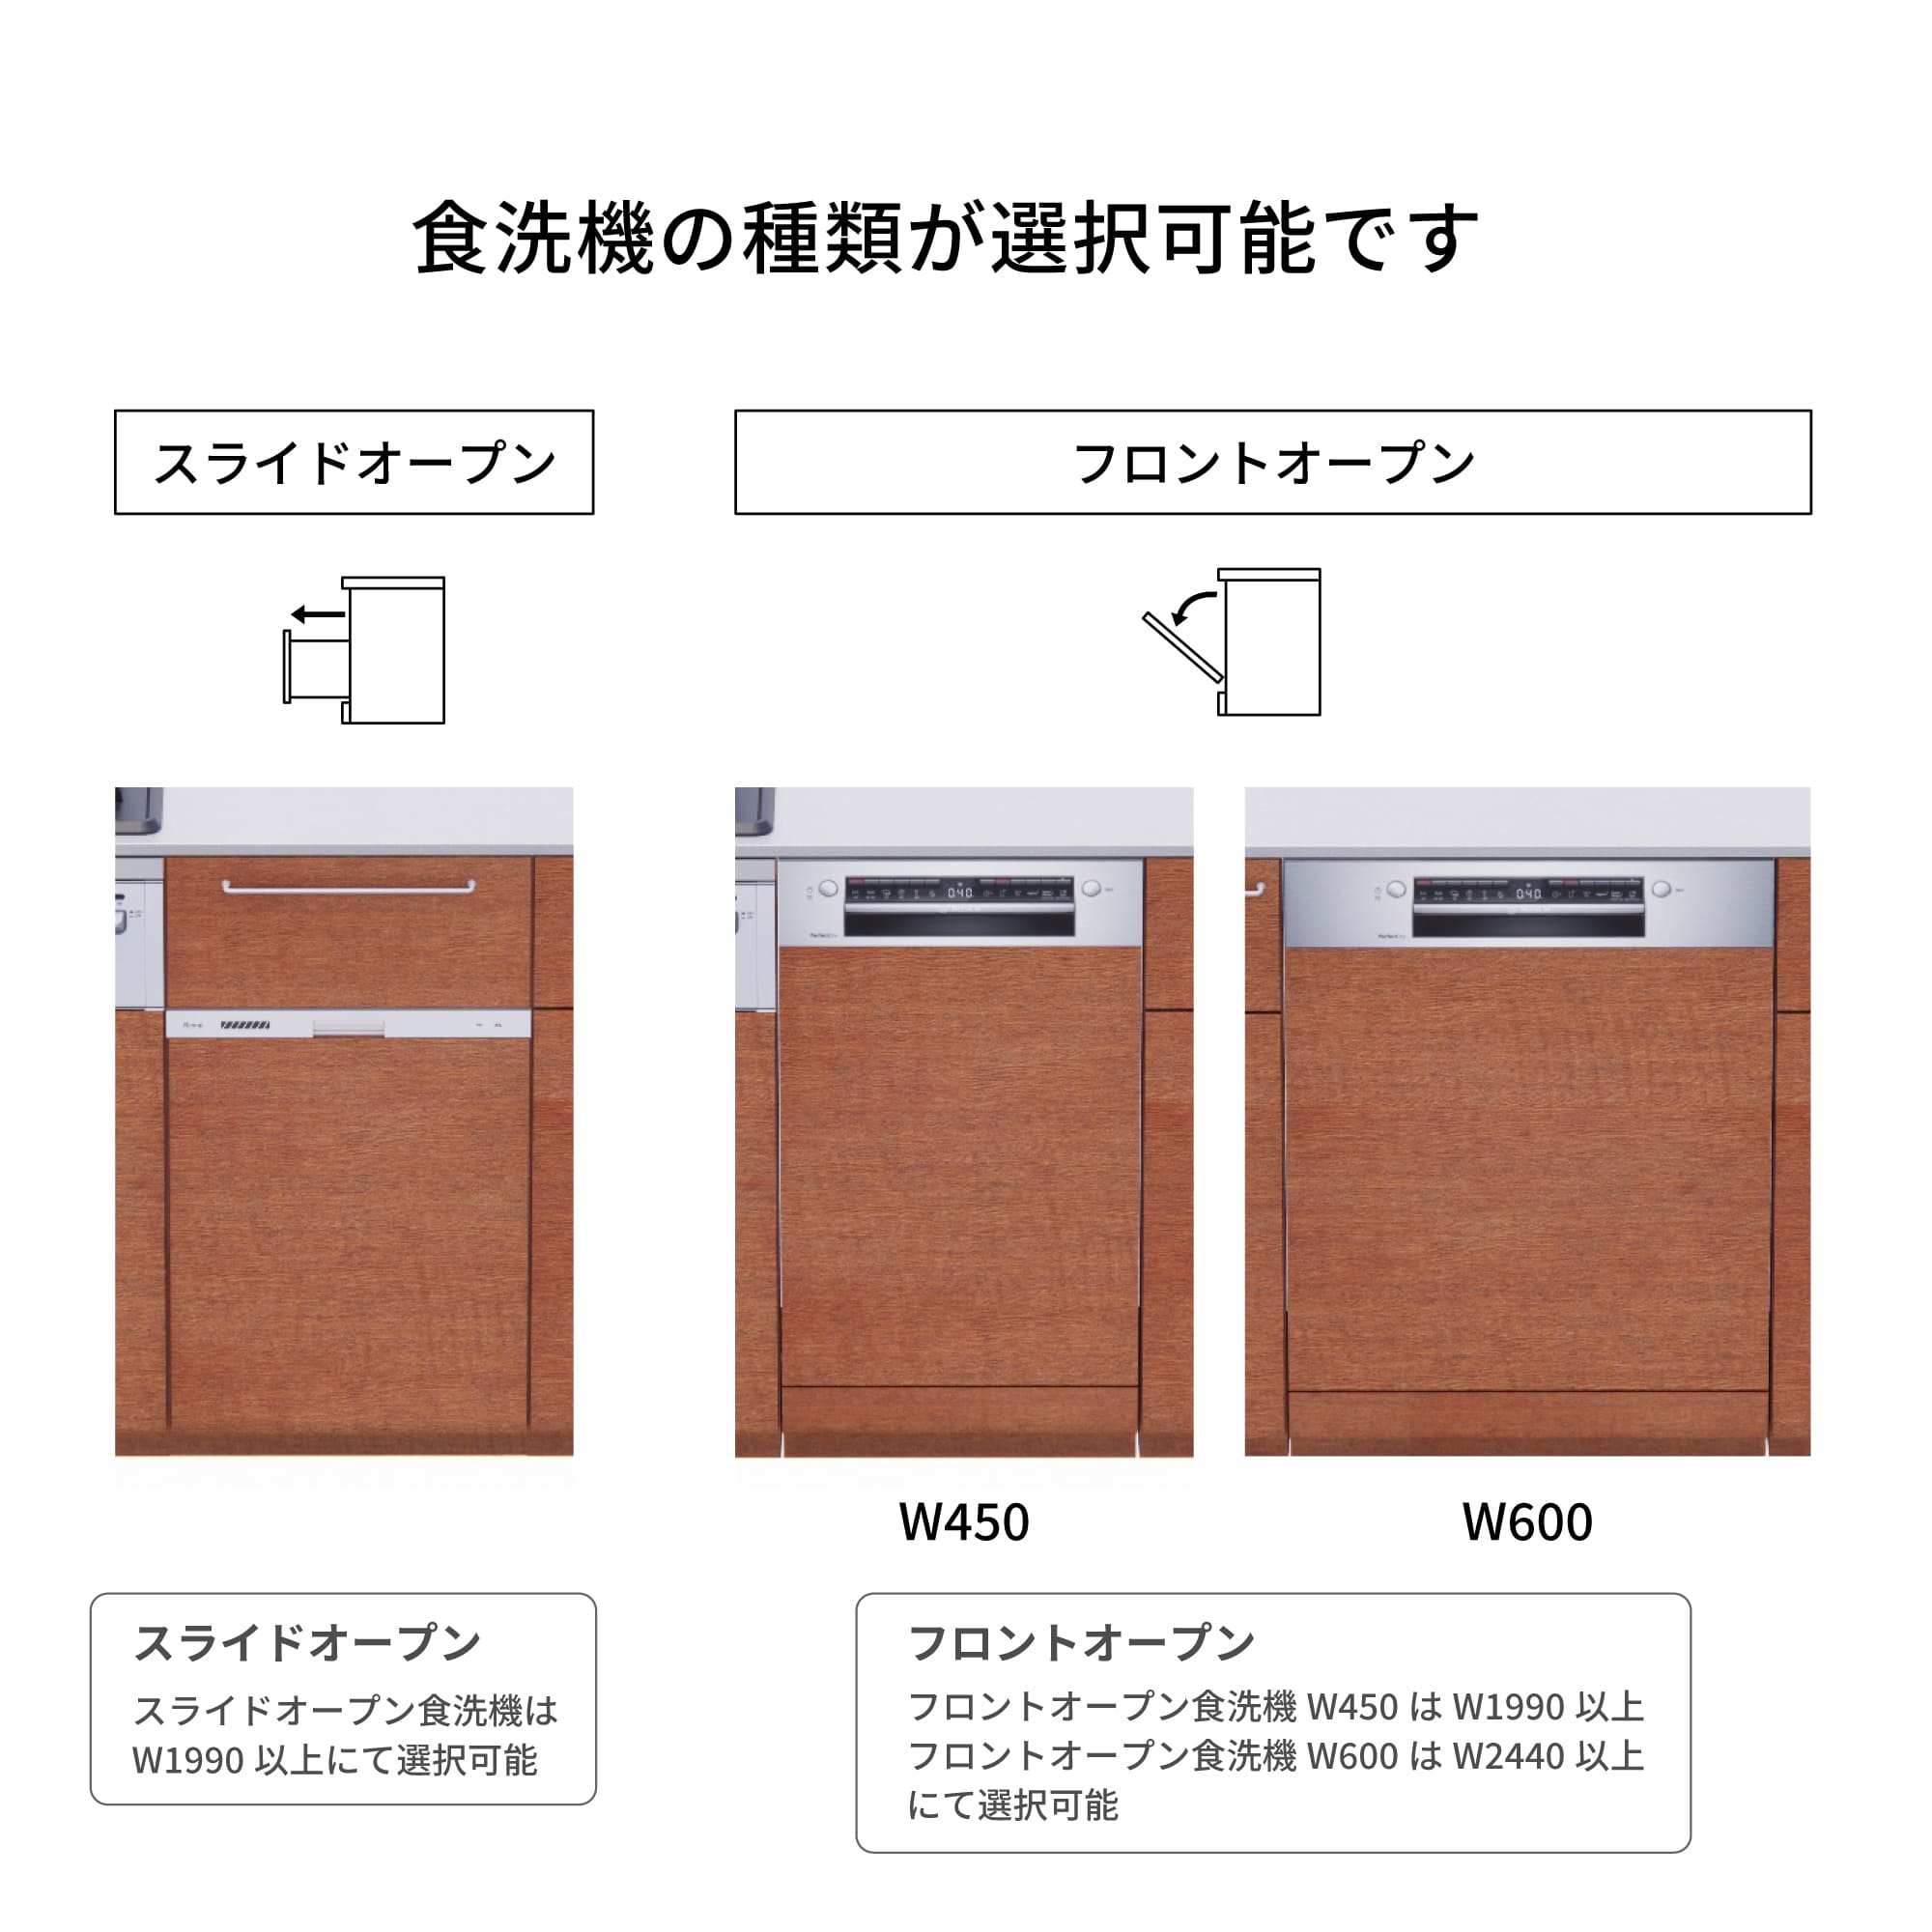 木製システムキッチン 対面型 W2140～2290・コンロなし / オーブンなし / 食洗機あり KB-KC022-39-G183 食洗機が選択できます